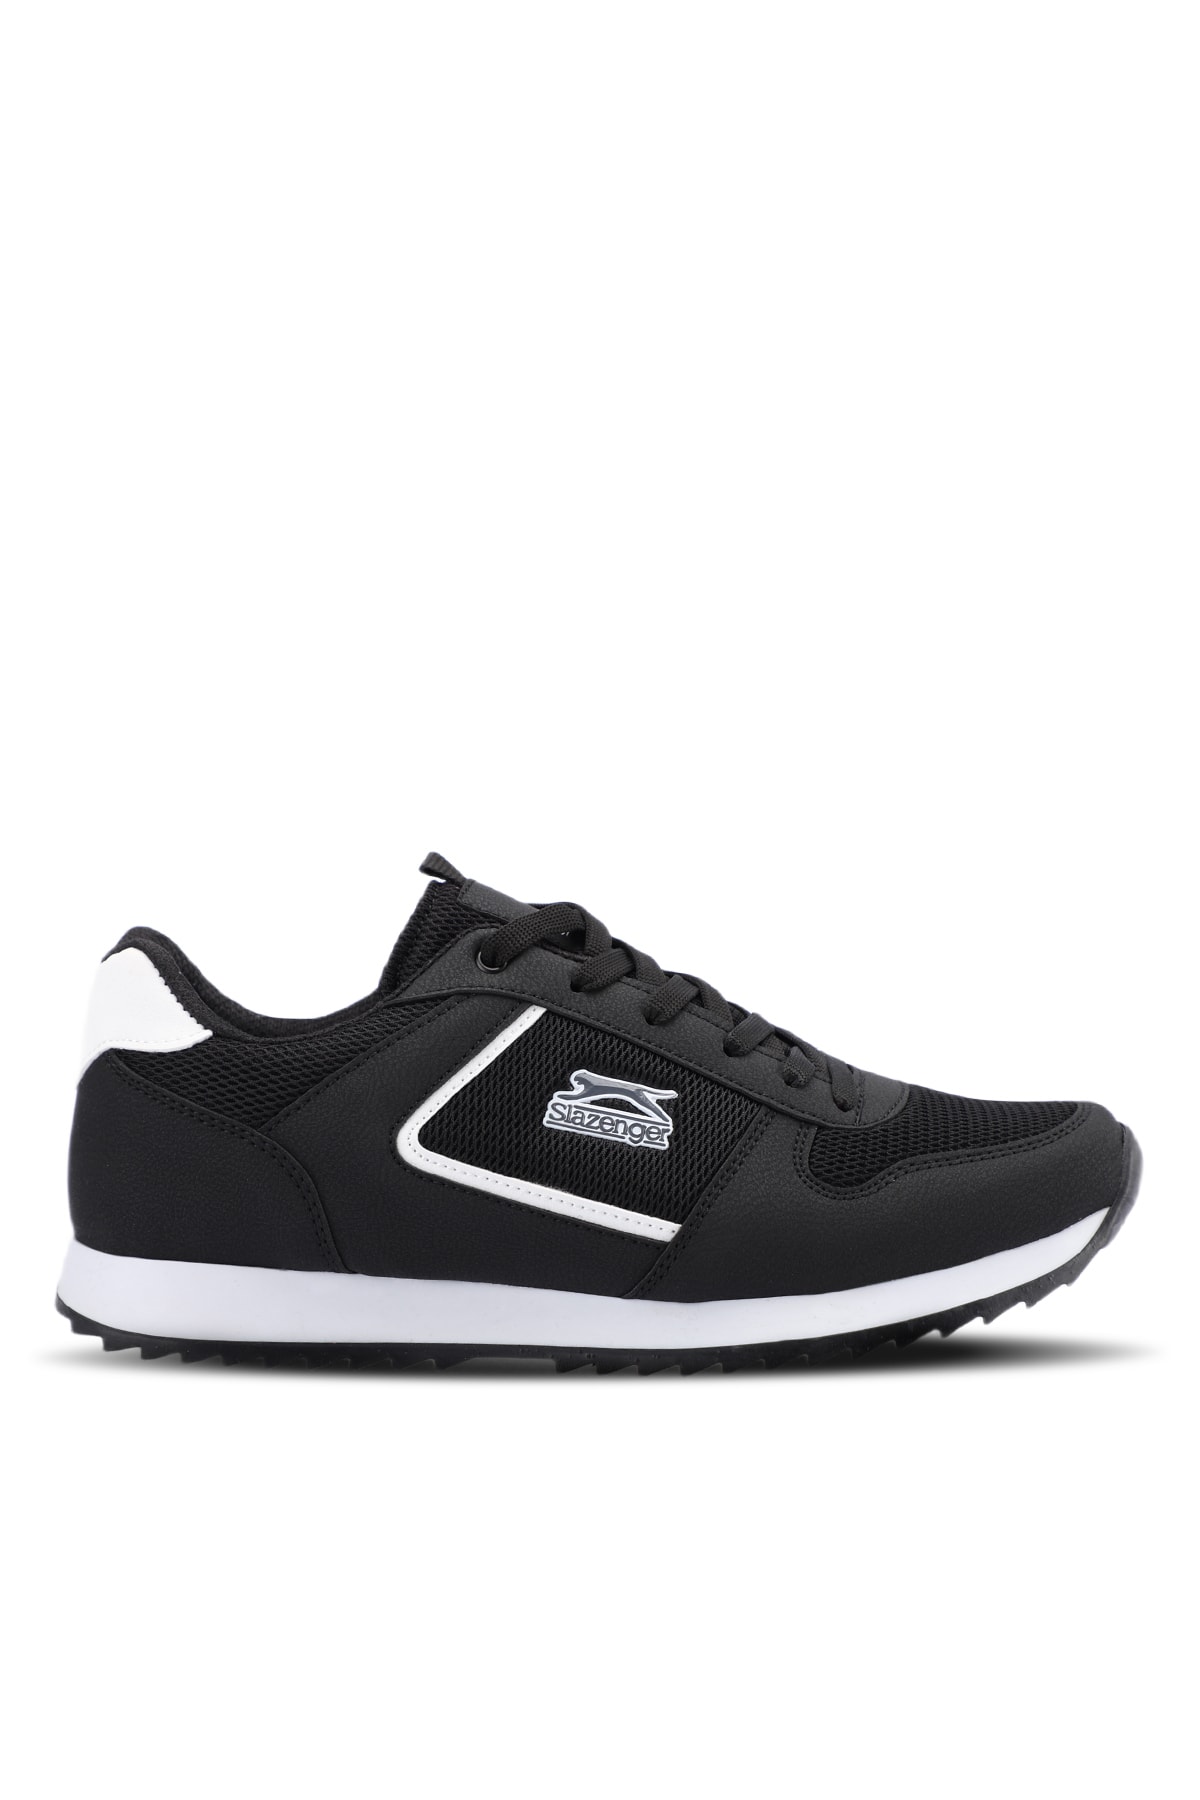 Slazenger Attack I Sneaker Mens Shoes Black / White